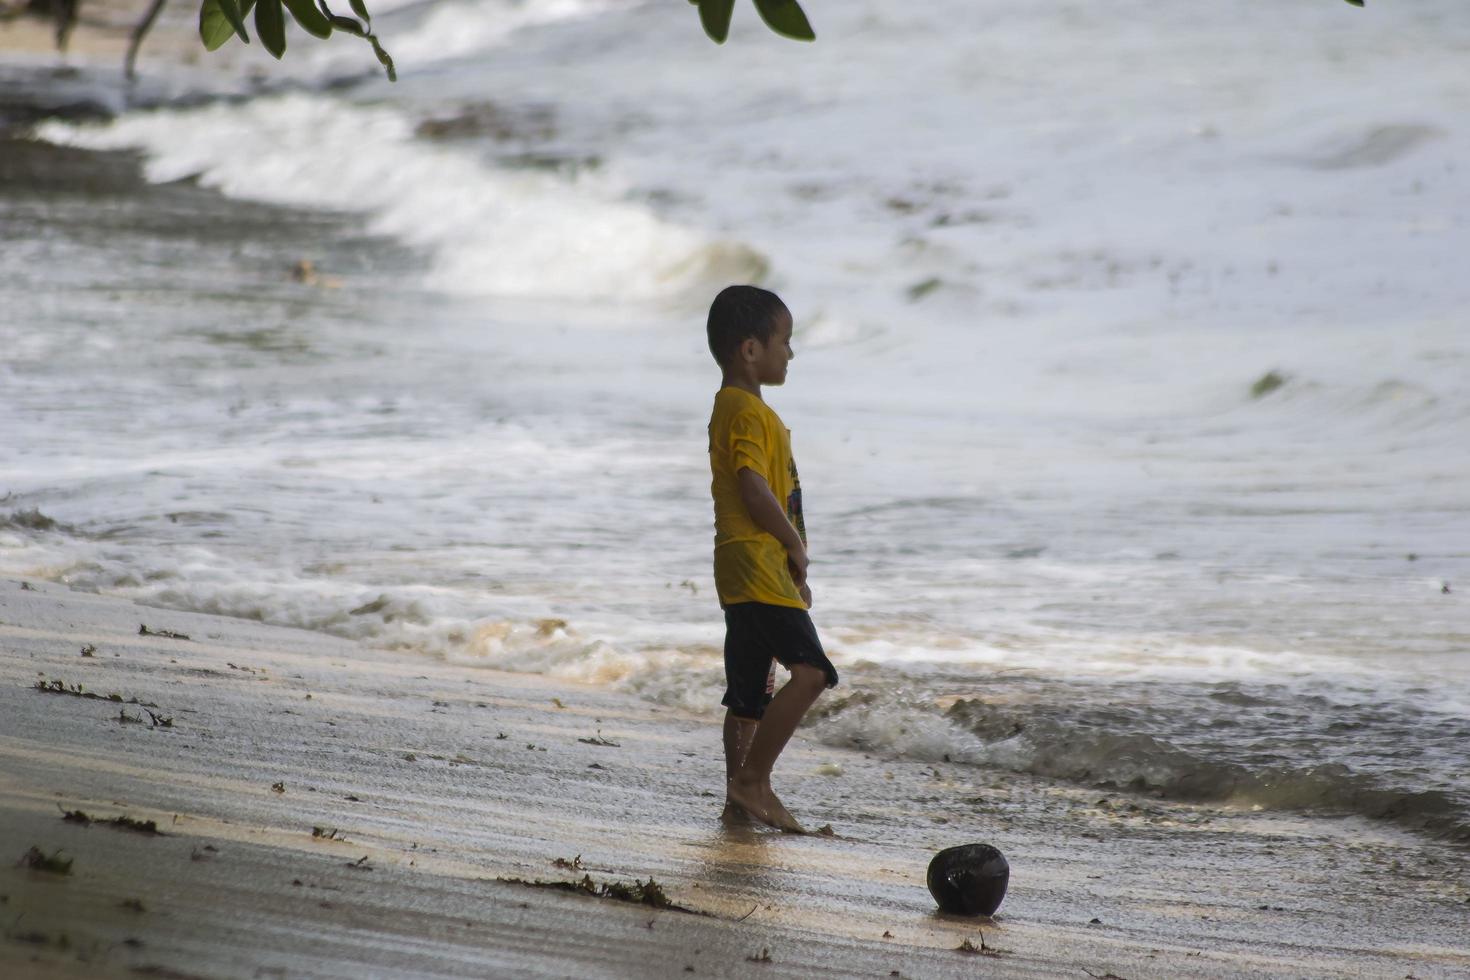 sorong, västra papua, indonesien, 12 december 2021. pojkar leker mot vågorna på stranden foto